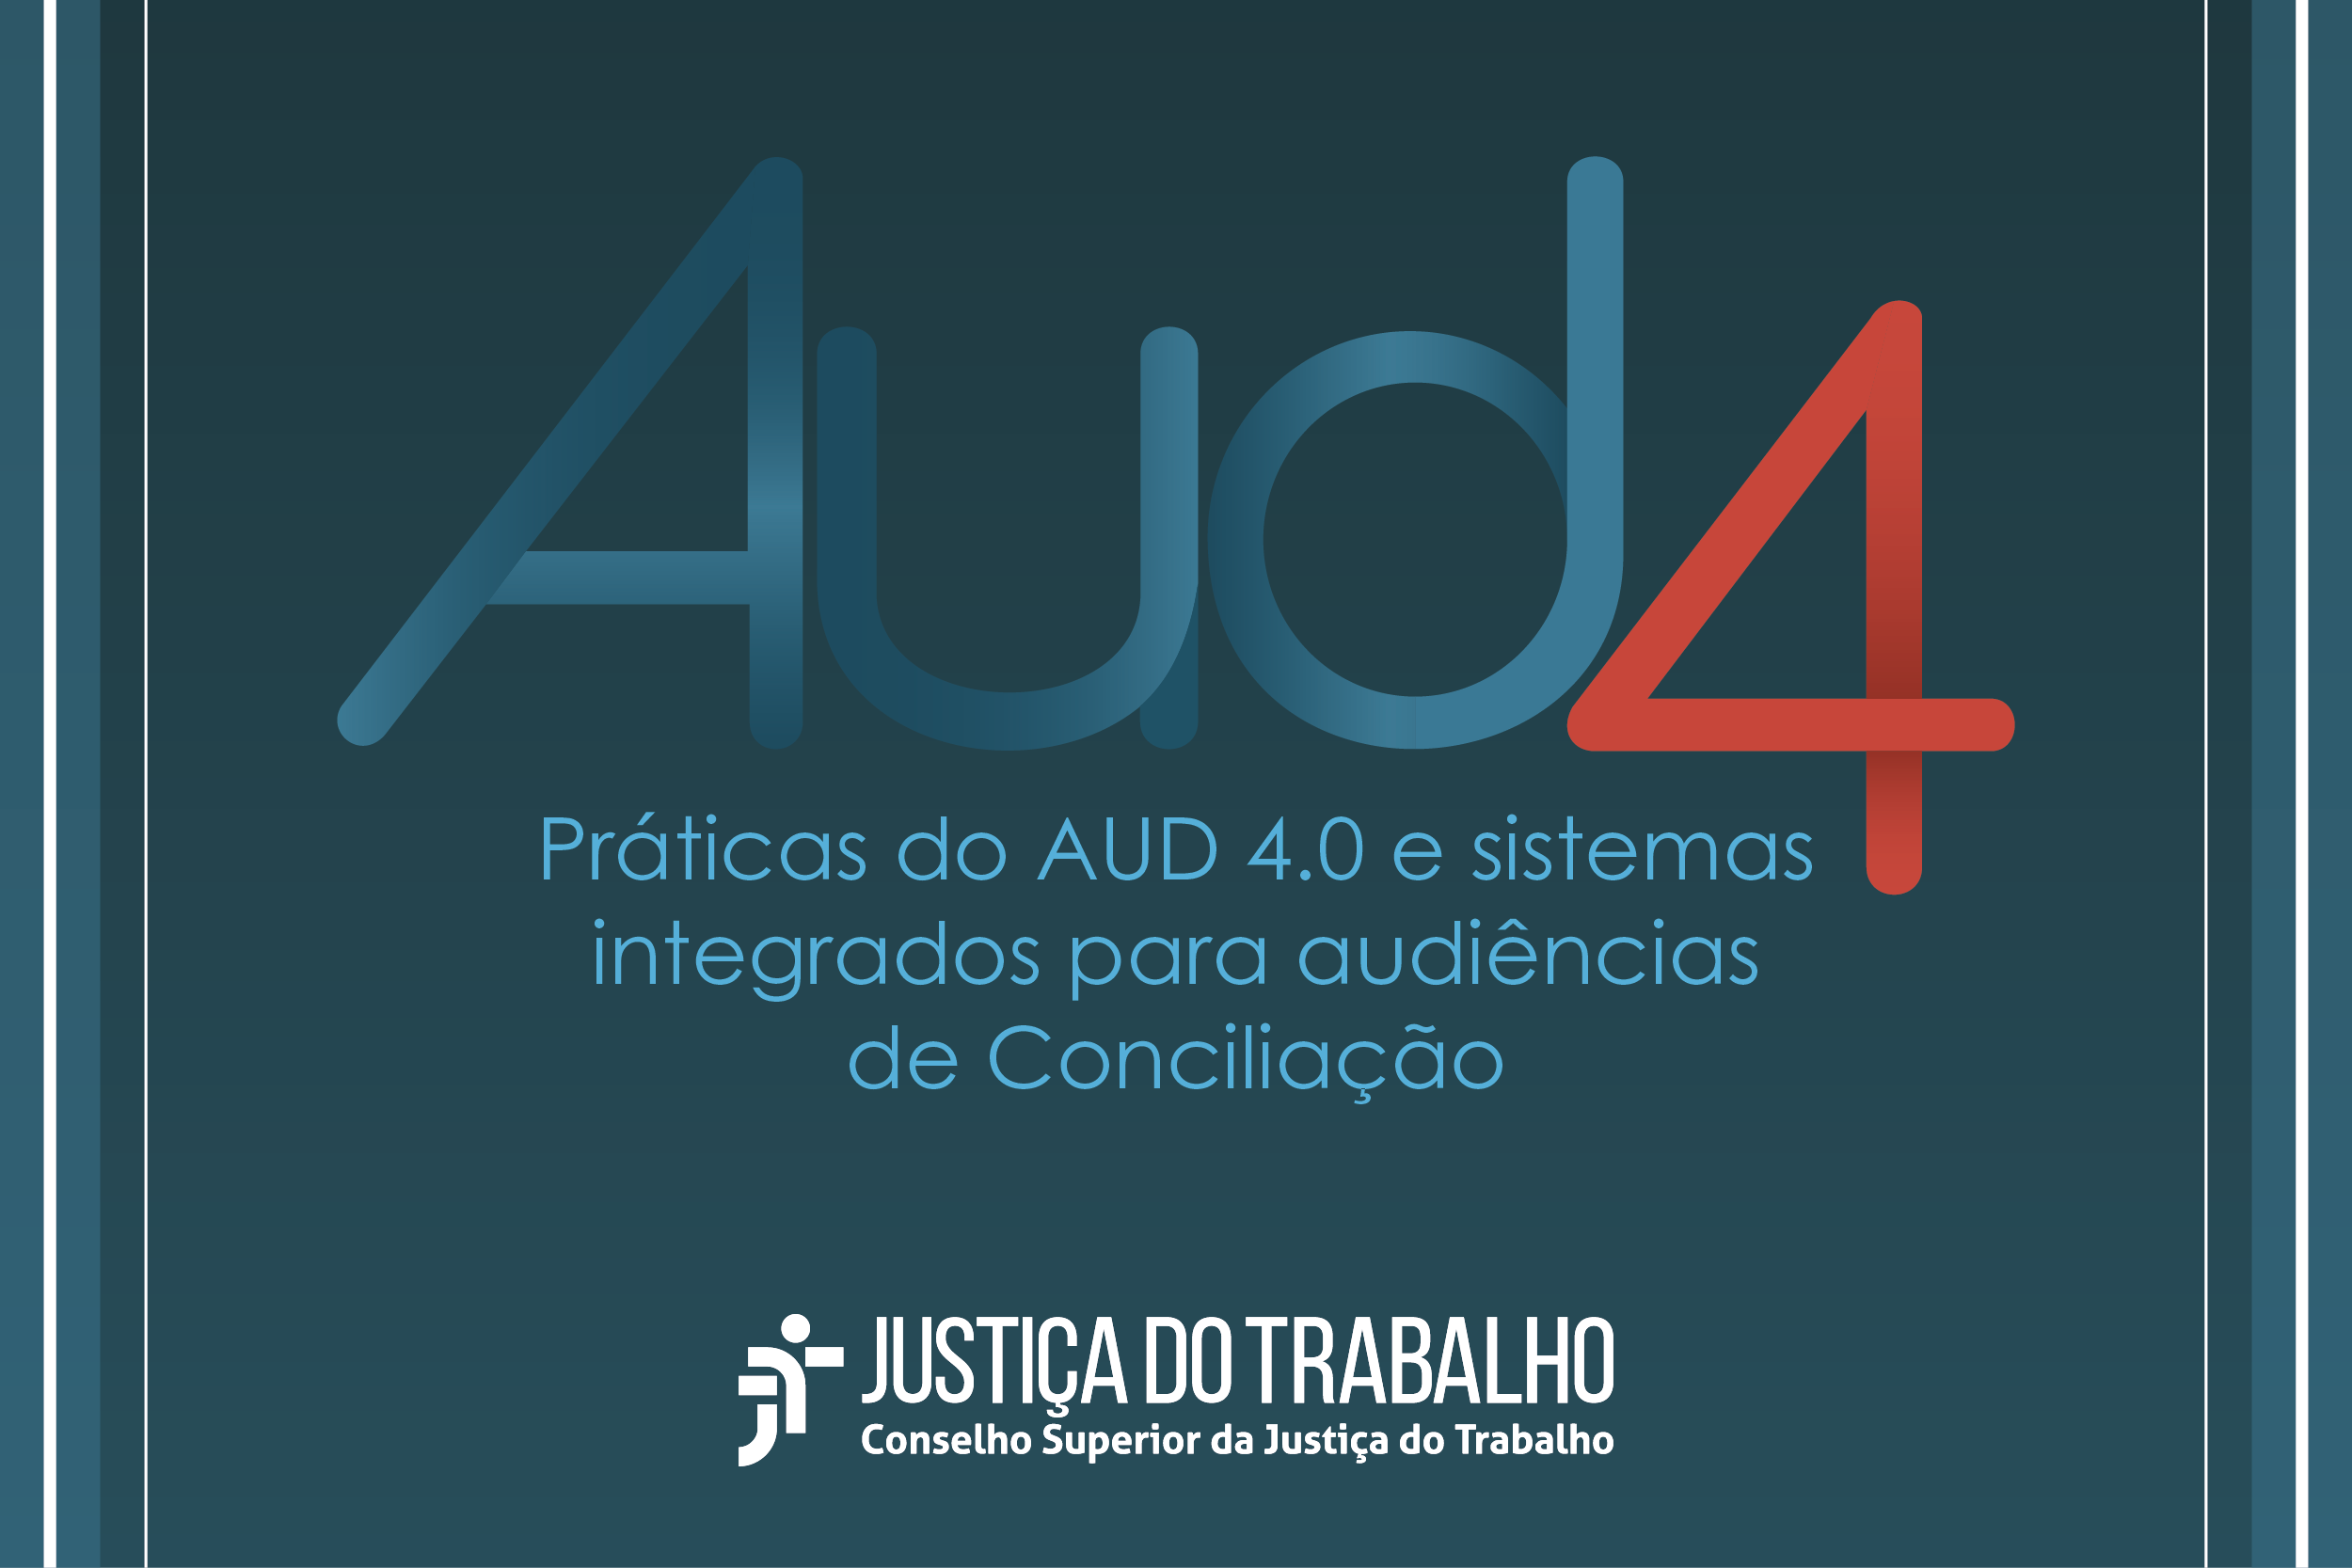 Inscrições abertas para webinário sobre Aud 4.0 e sistemas integrados para audiências de Conciliação